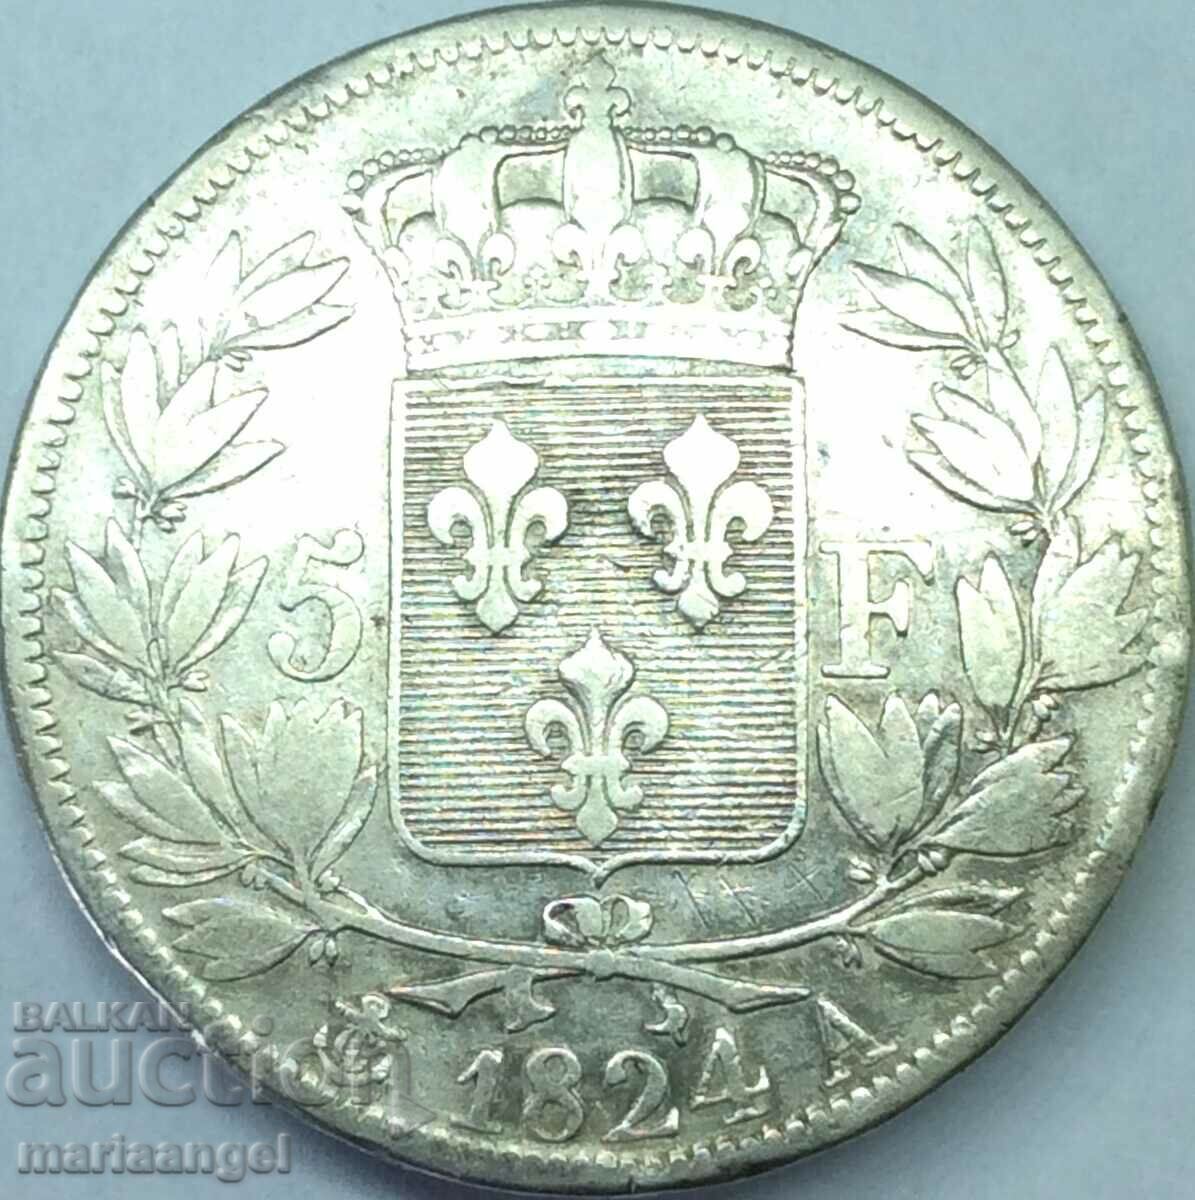 France 5 Francs 1824 A - Paris Silver